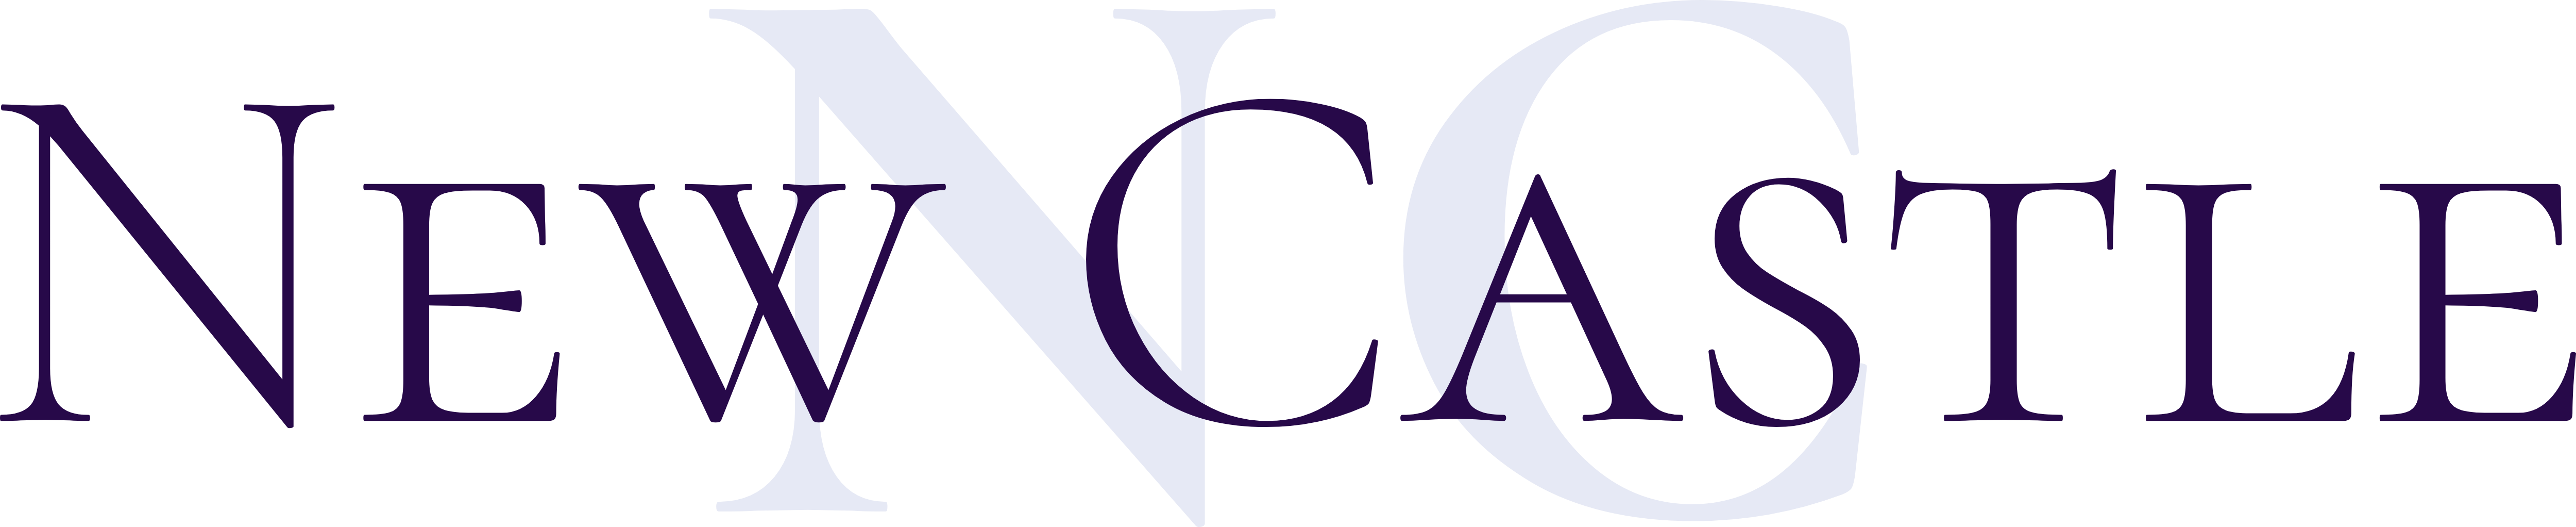 New Castle Group, LLC Logo